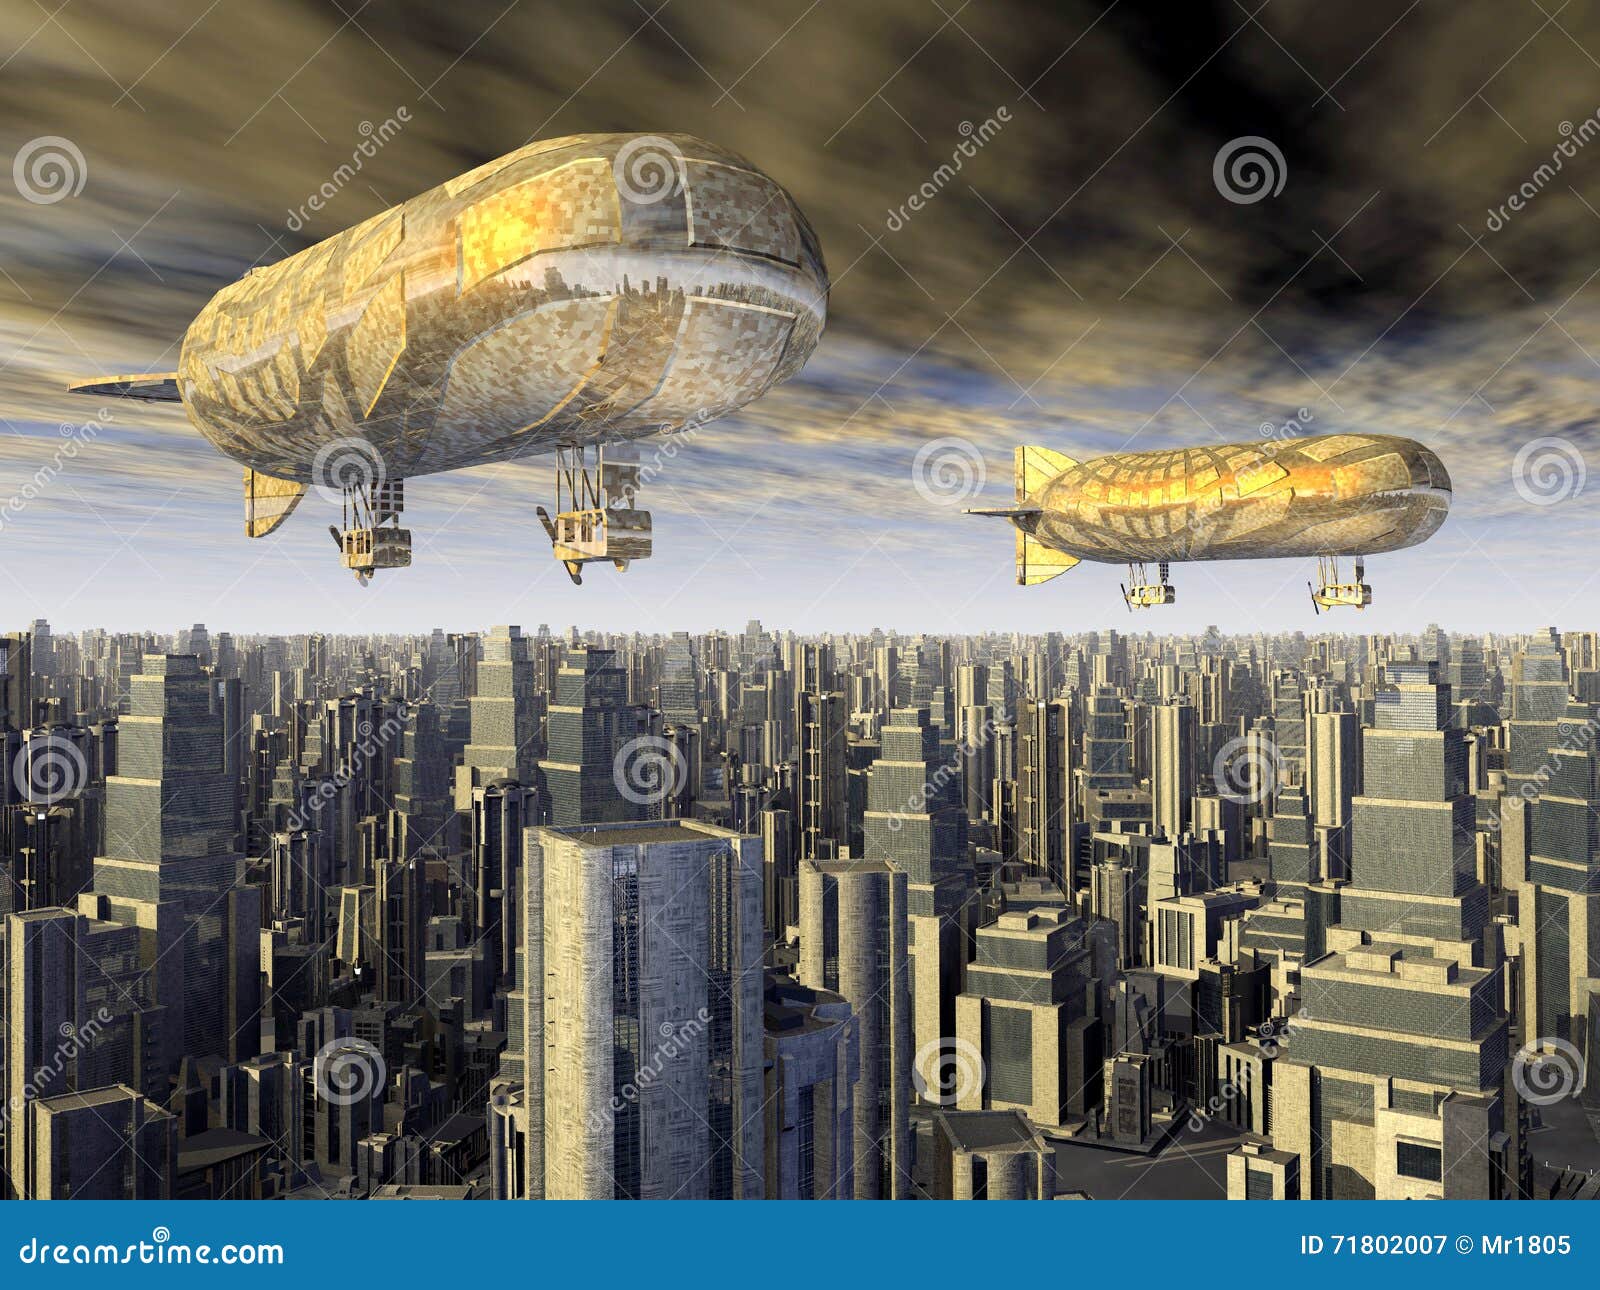 fantasy airships over a megacity